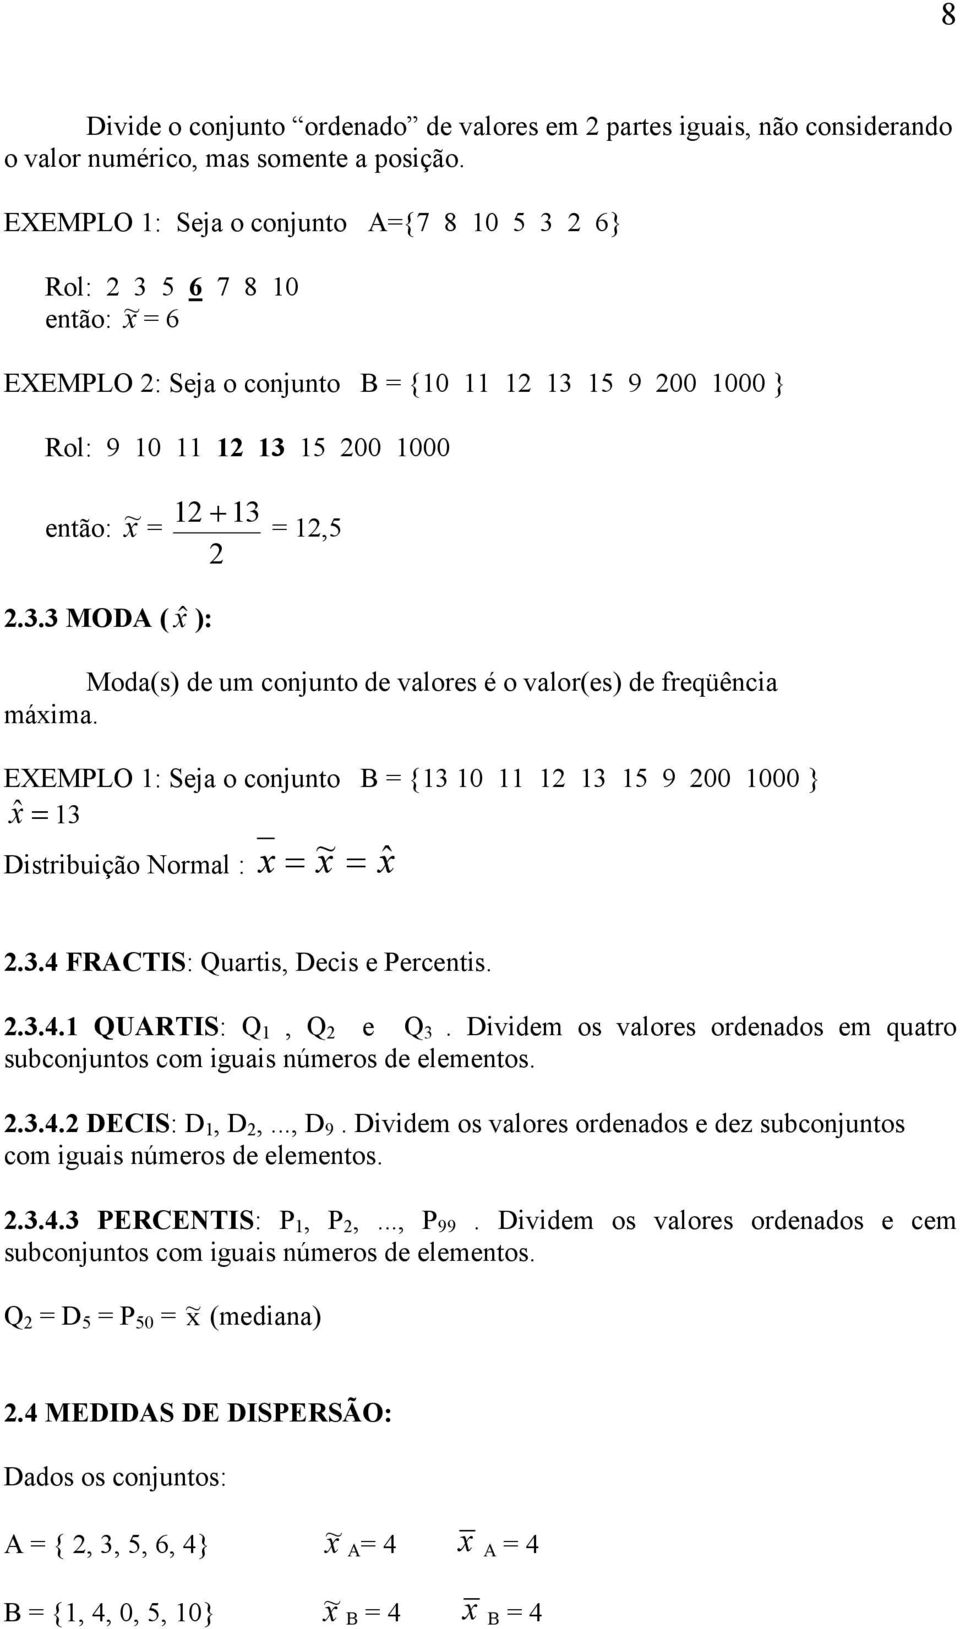 EEMPLO : Seja o cojuto B {3 0 3 5 9 00 000 } xˆ 3 Dstrbução Normal : x ~ x xˆ.3.4 FRACTIS: Quarts, Decs e Percets..3.4. QUARTIS: Q, Q e Q 3.